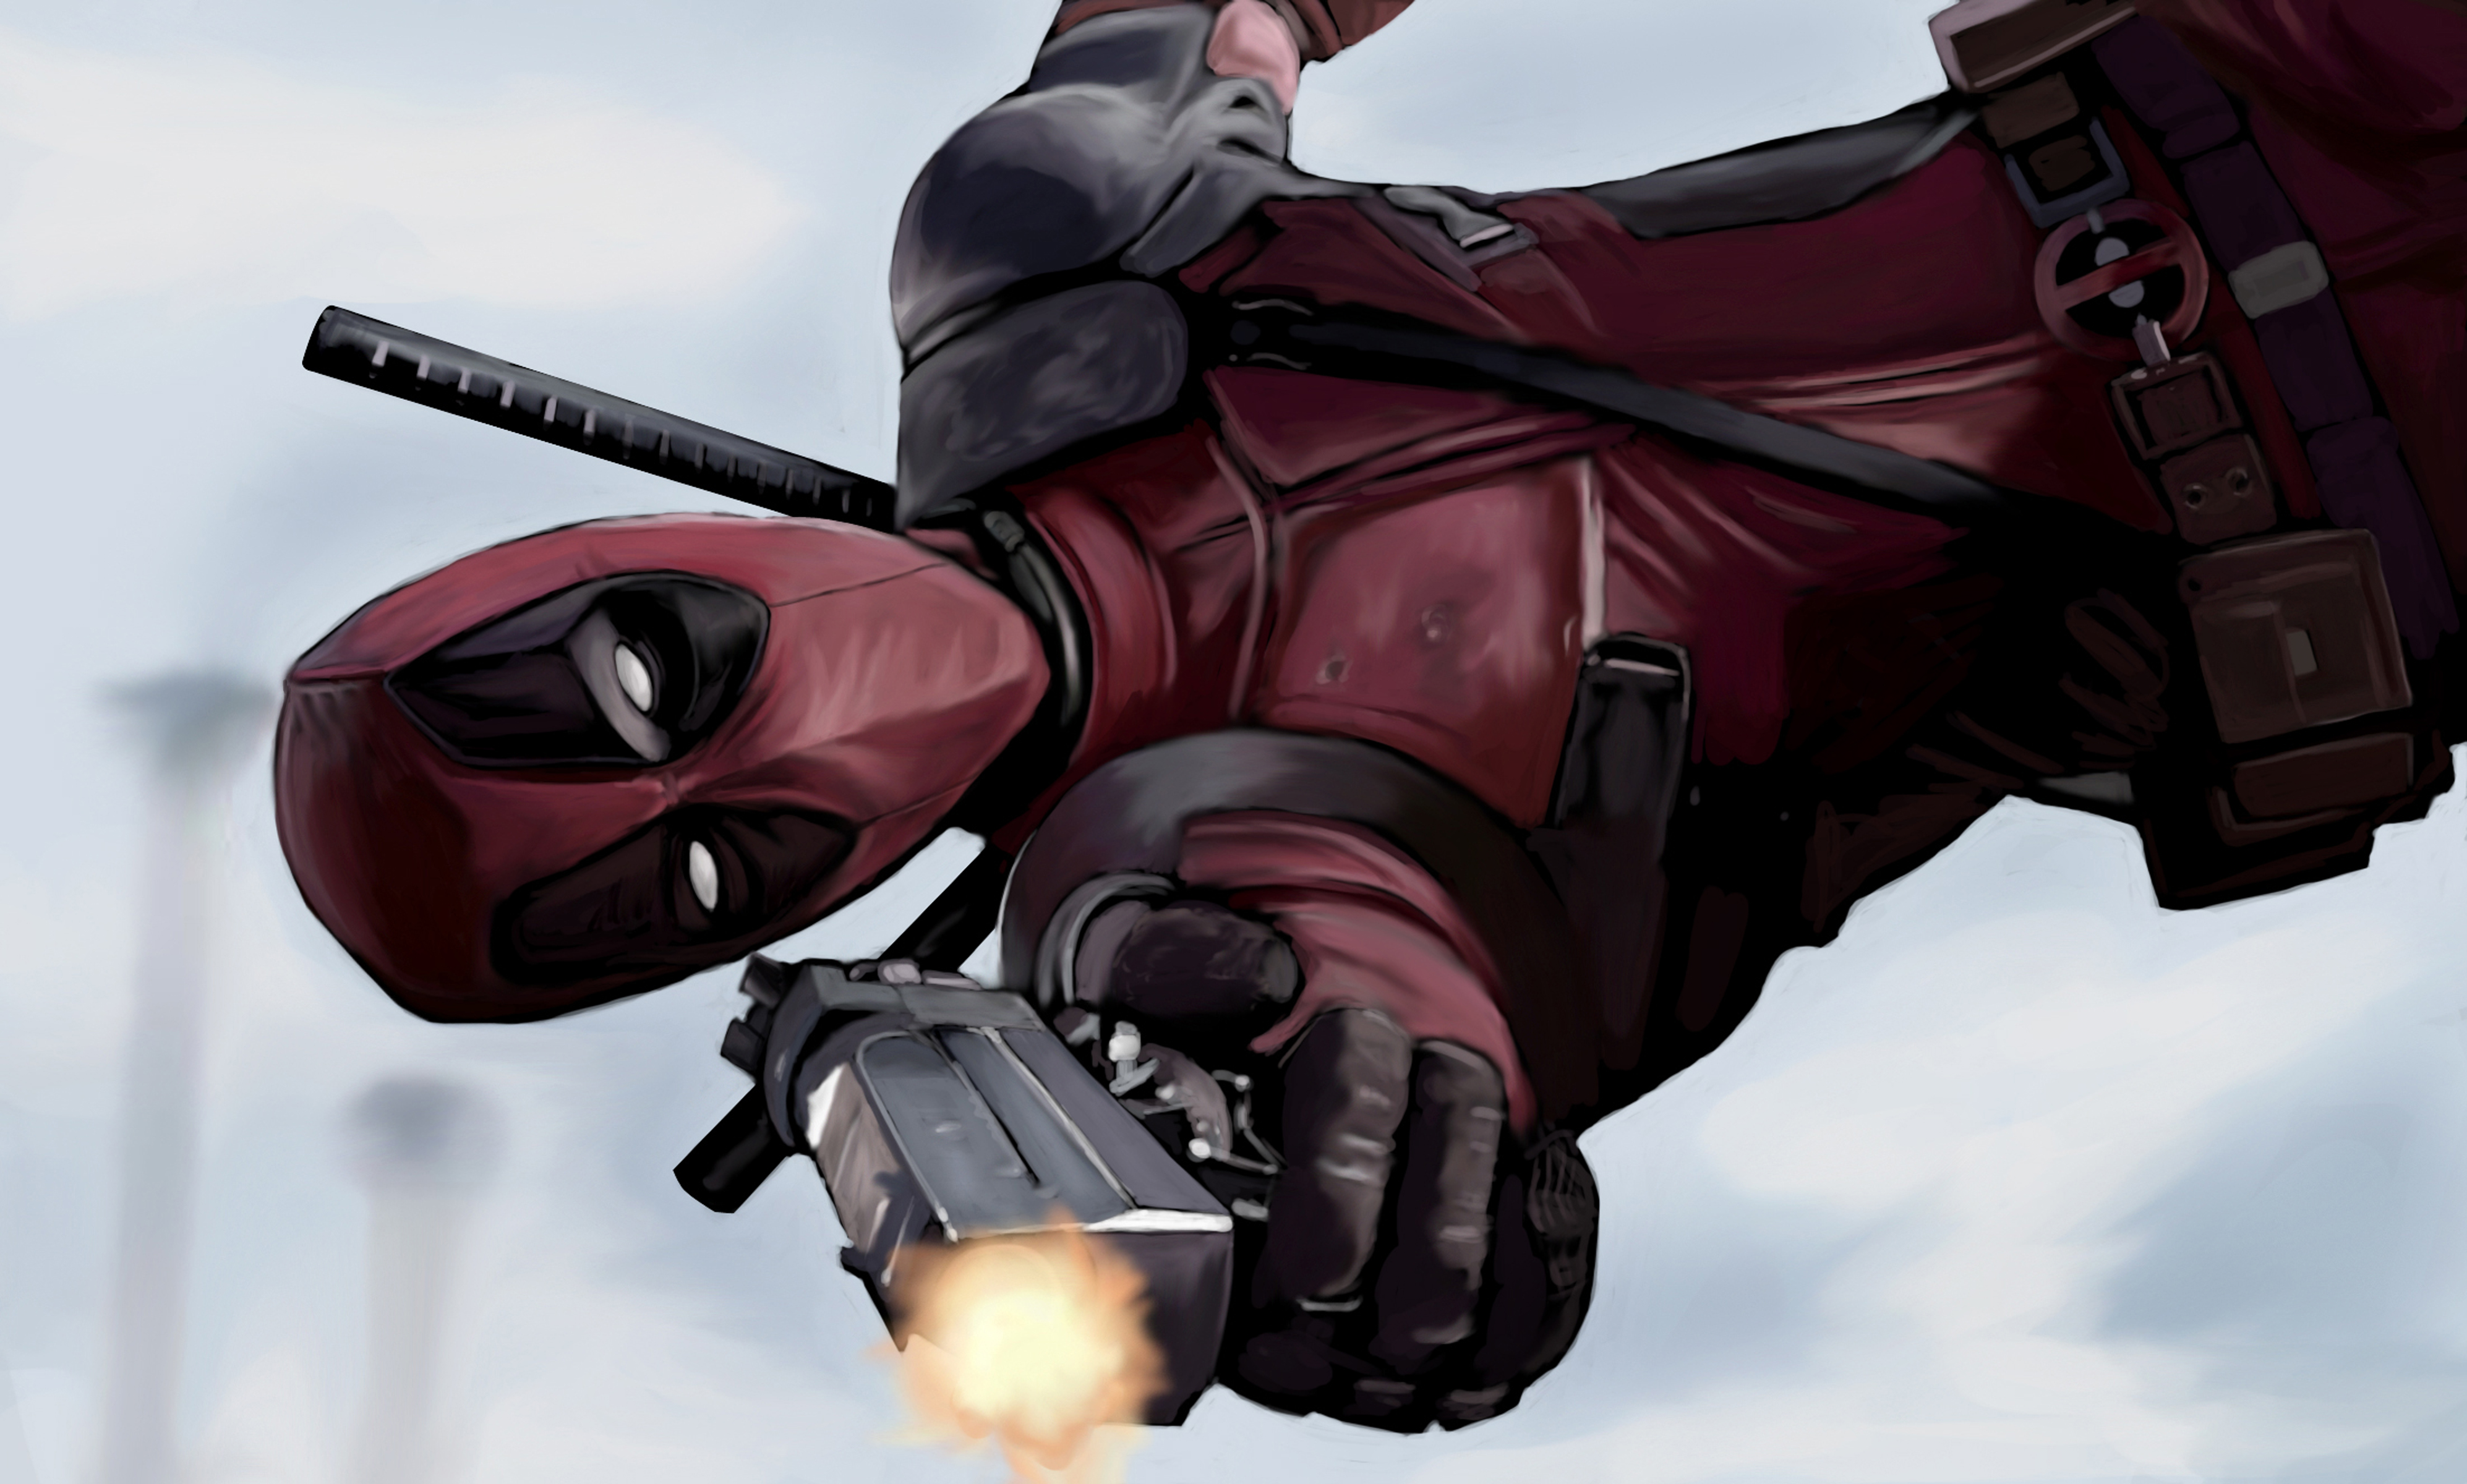 Deadpool Artwork 4k, HD Superheroes, 4k Wallpapers, Images ...